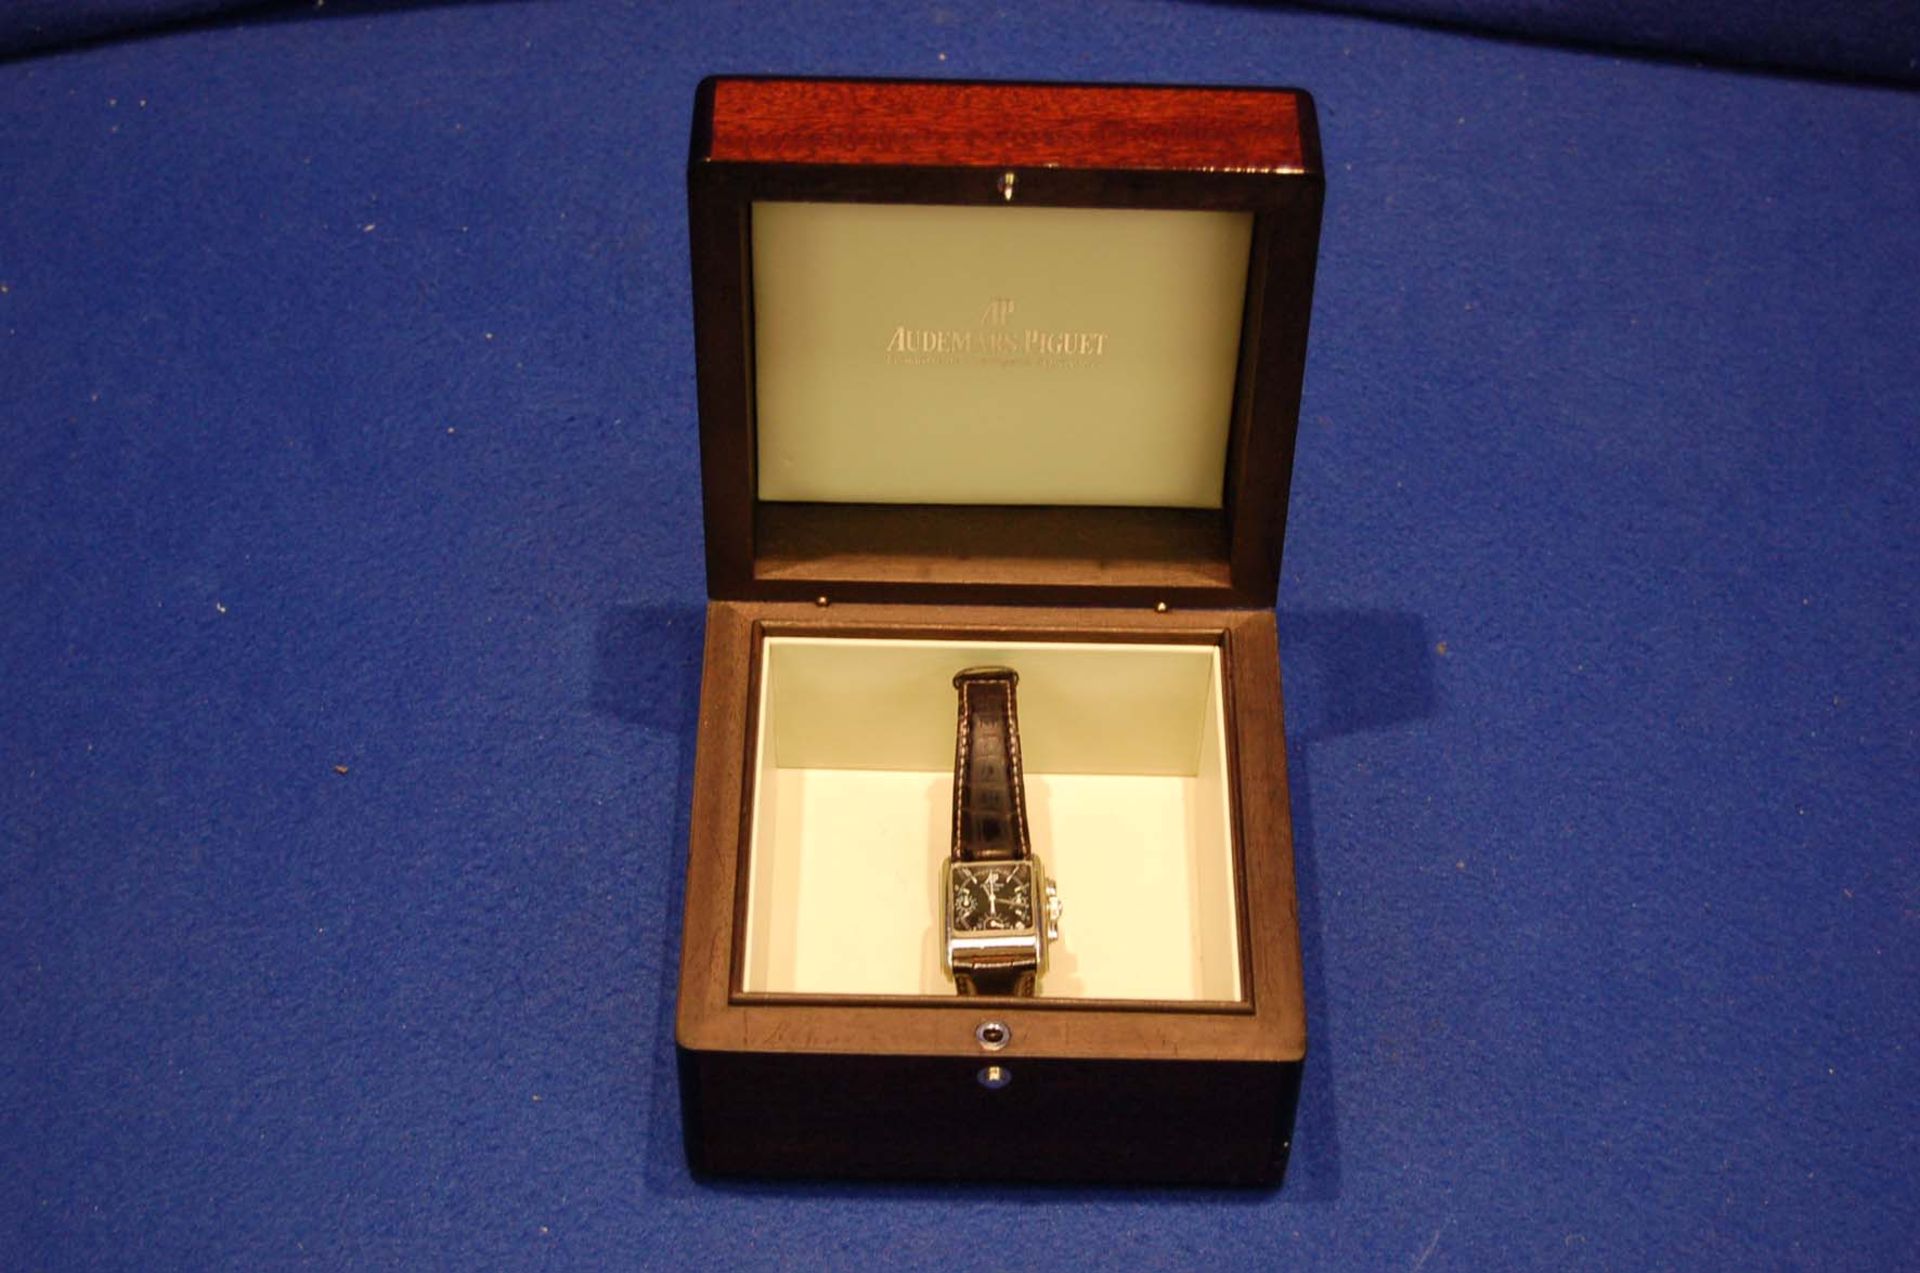 AUDEMARS PIGUET Gentleman’s 18ct White Gold Wrist Watch, Edward Piguet Chronograph E74633, - Image 4 of 6